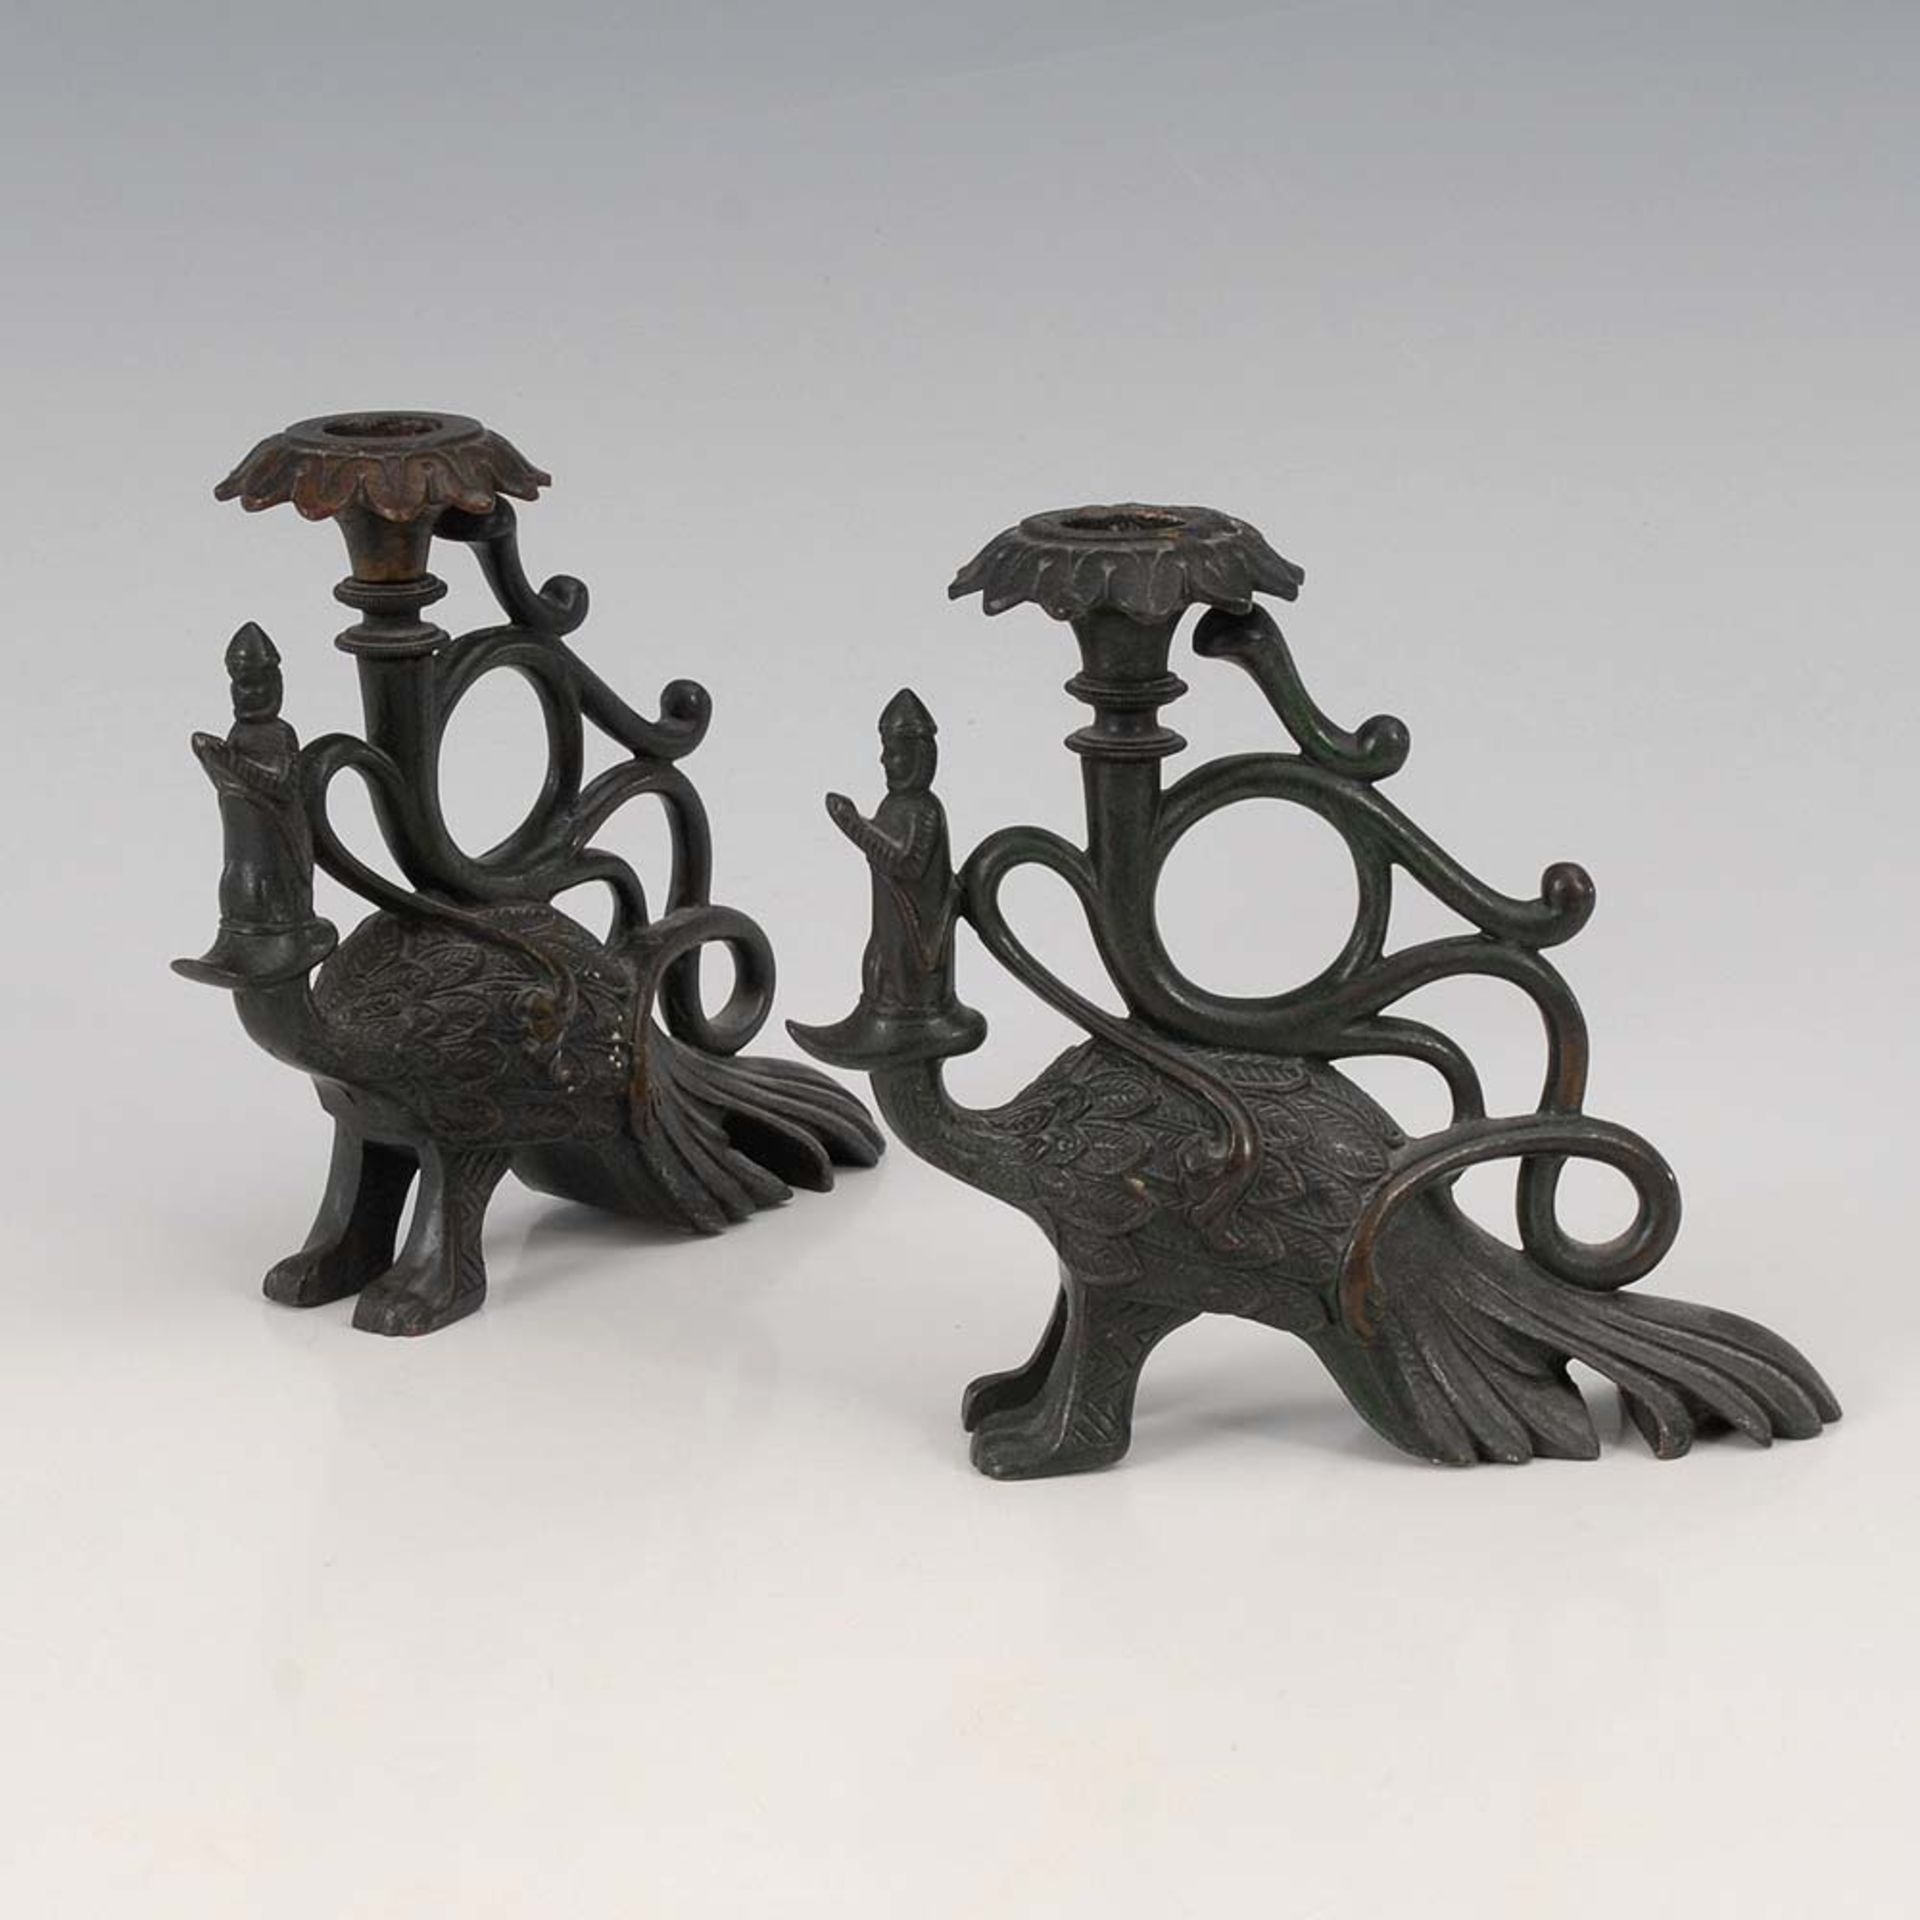 2 Leuchter in Pfauenform. China, Bronze. Ungewöhnliche Kerzenleuchter in Tierform, der Kopf